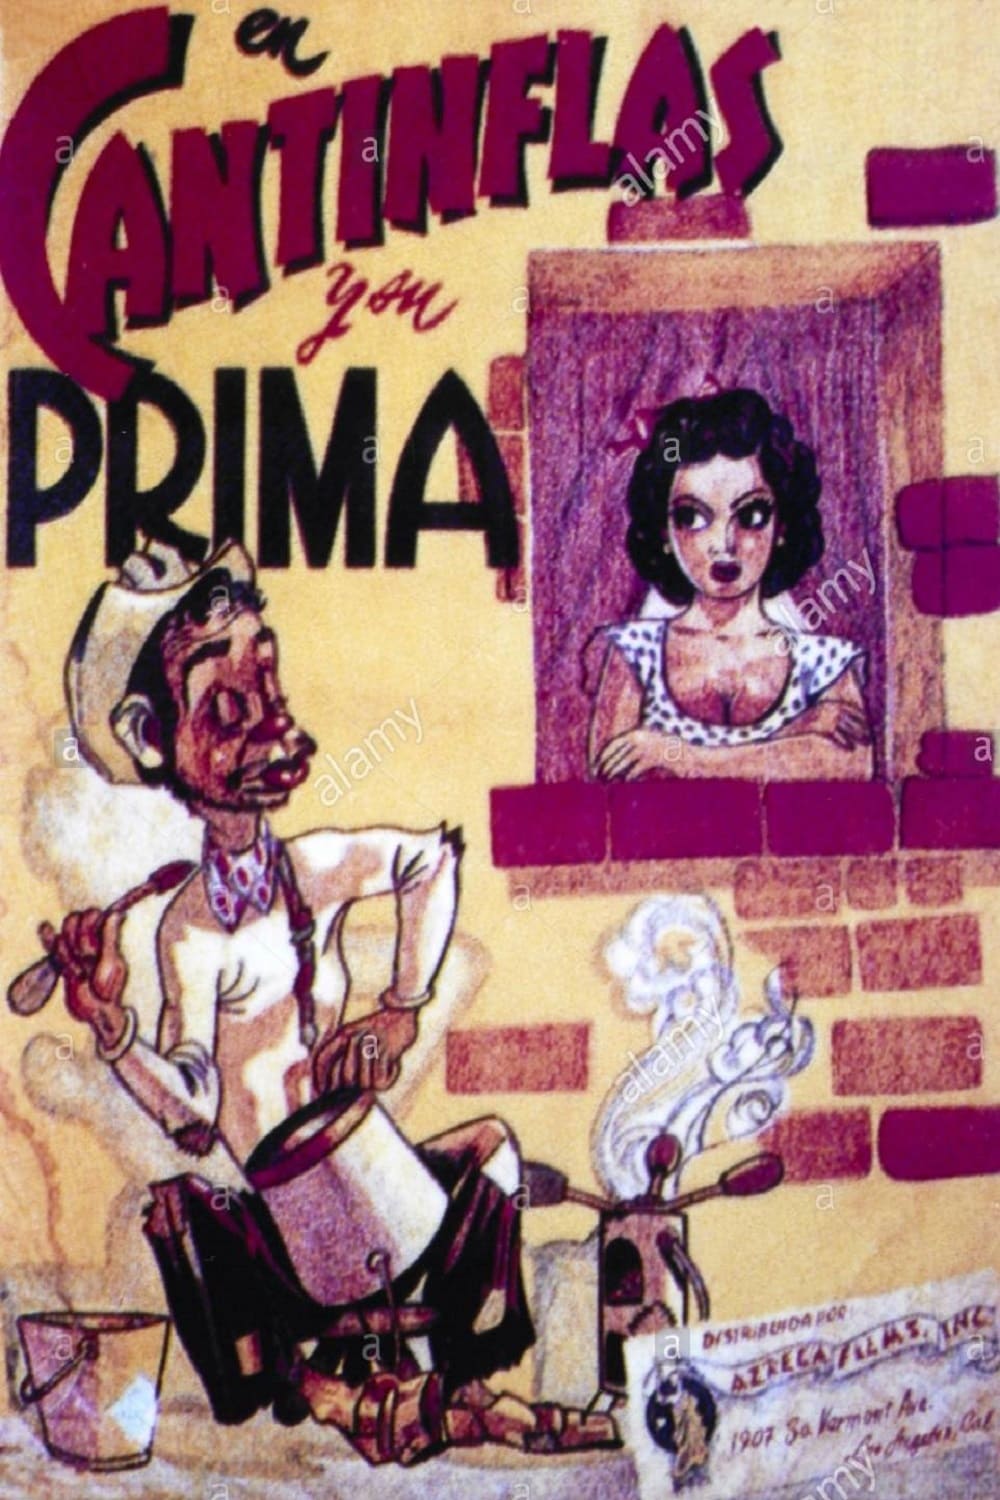 Cantinflas y su prima (1940)